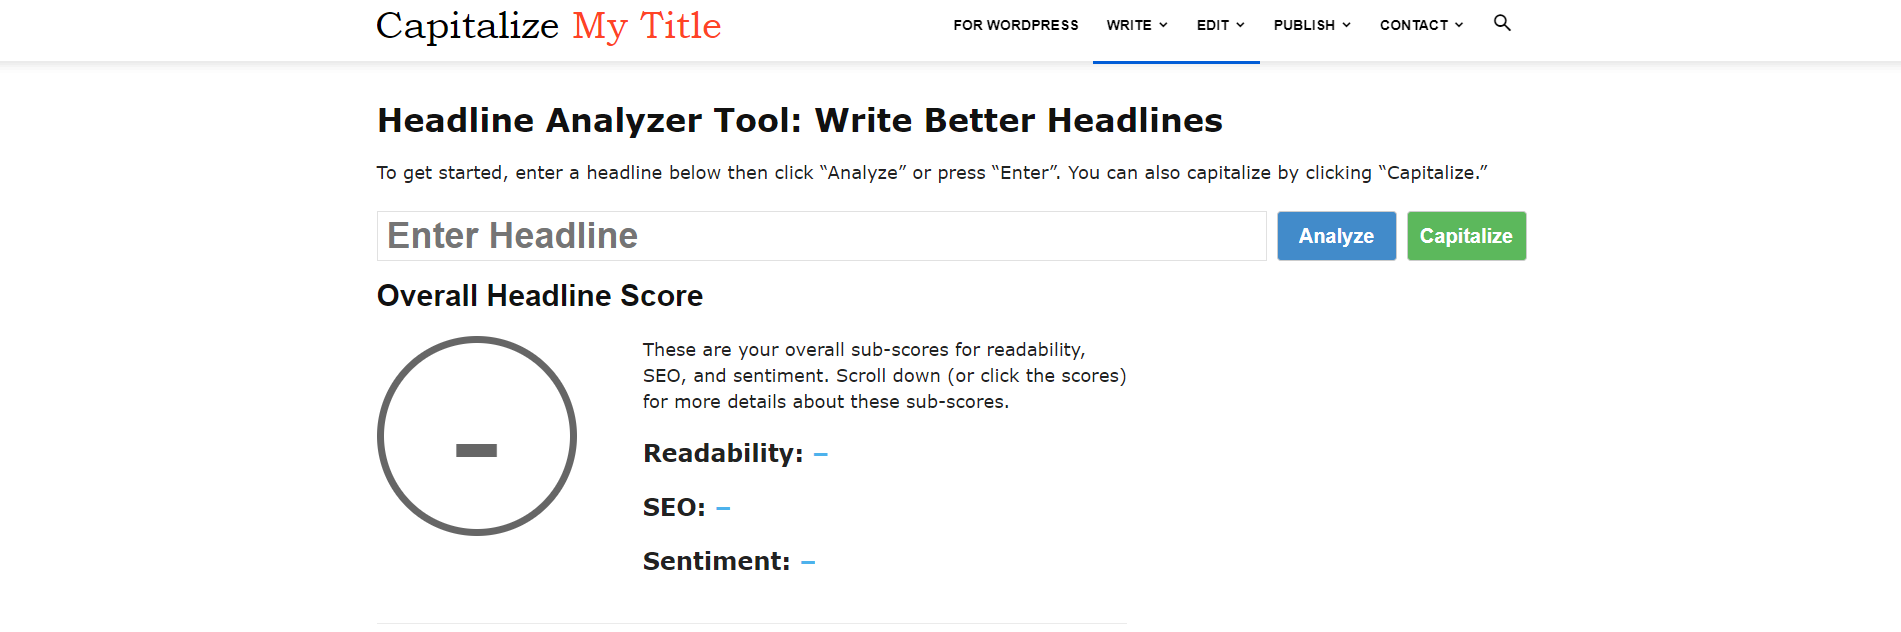 capitalize my title headline analyzer